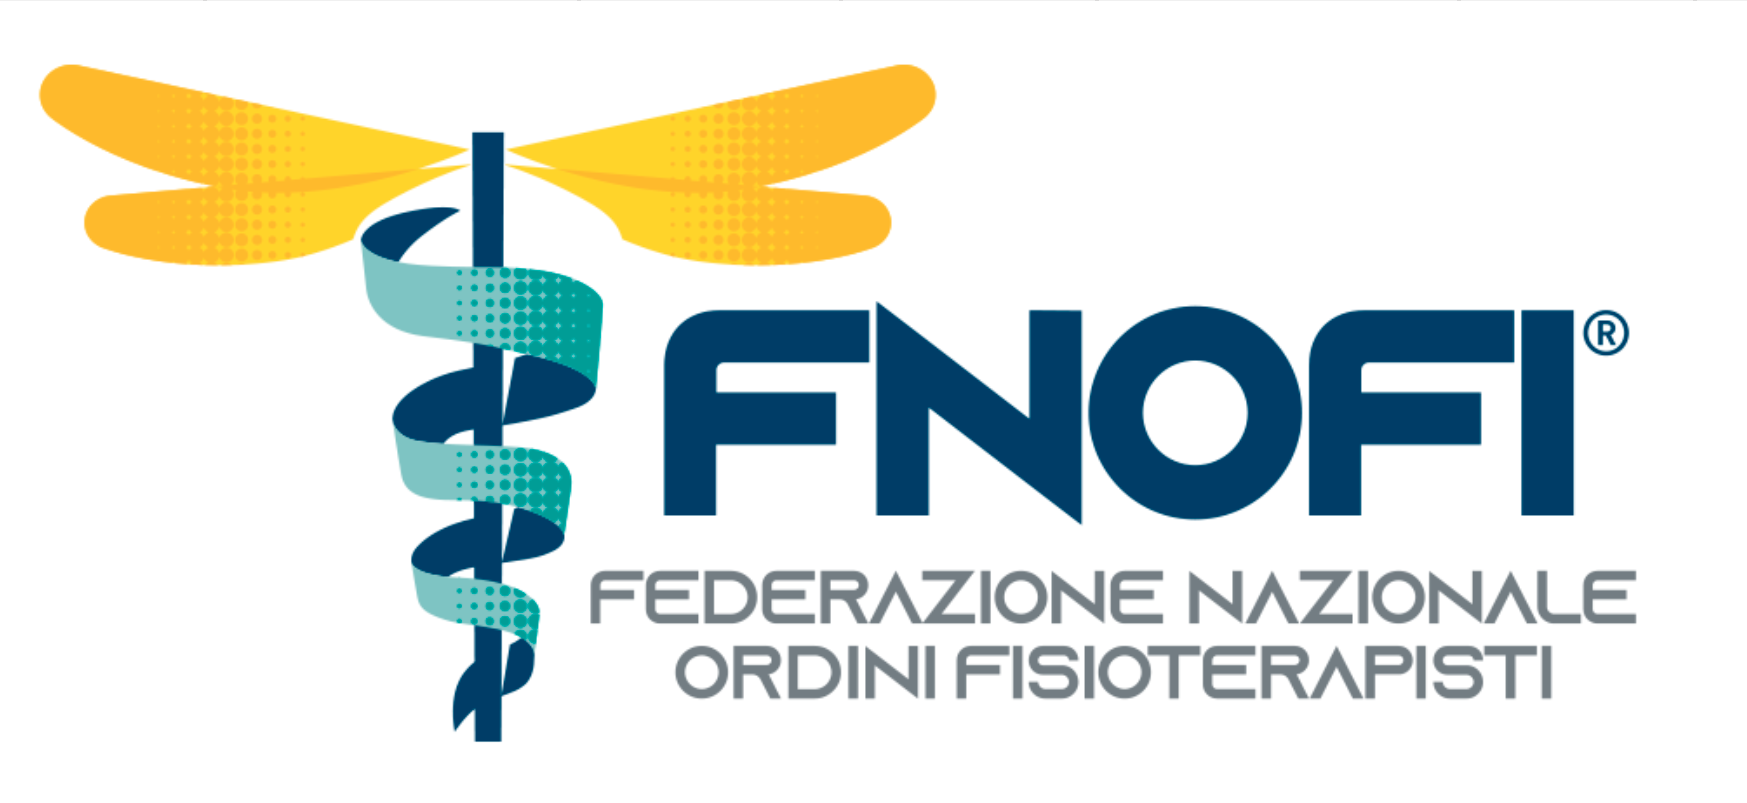 Al momento stai visualizzando FNOFI: analisi numerica estesa e aggregata della realtà professionale dei fisioterapisti